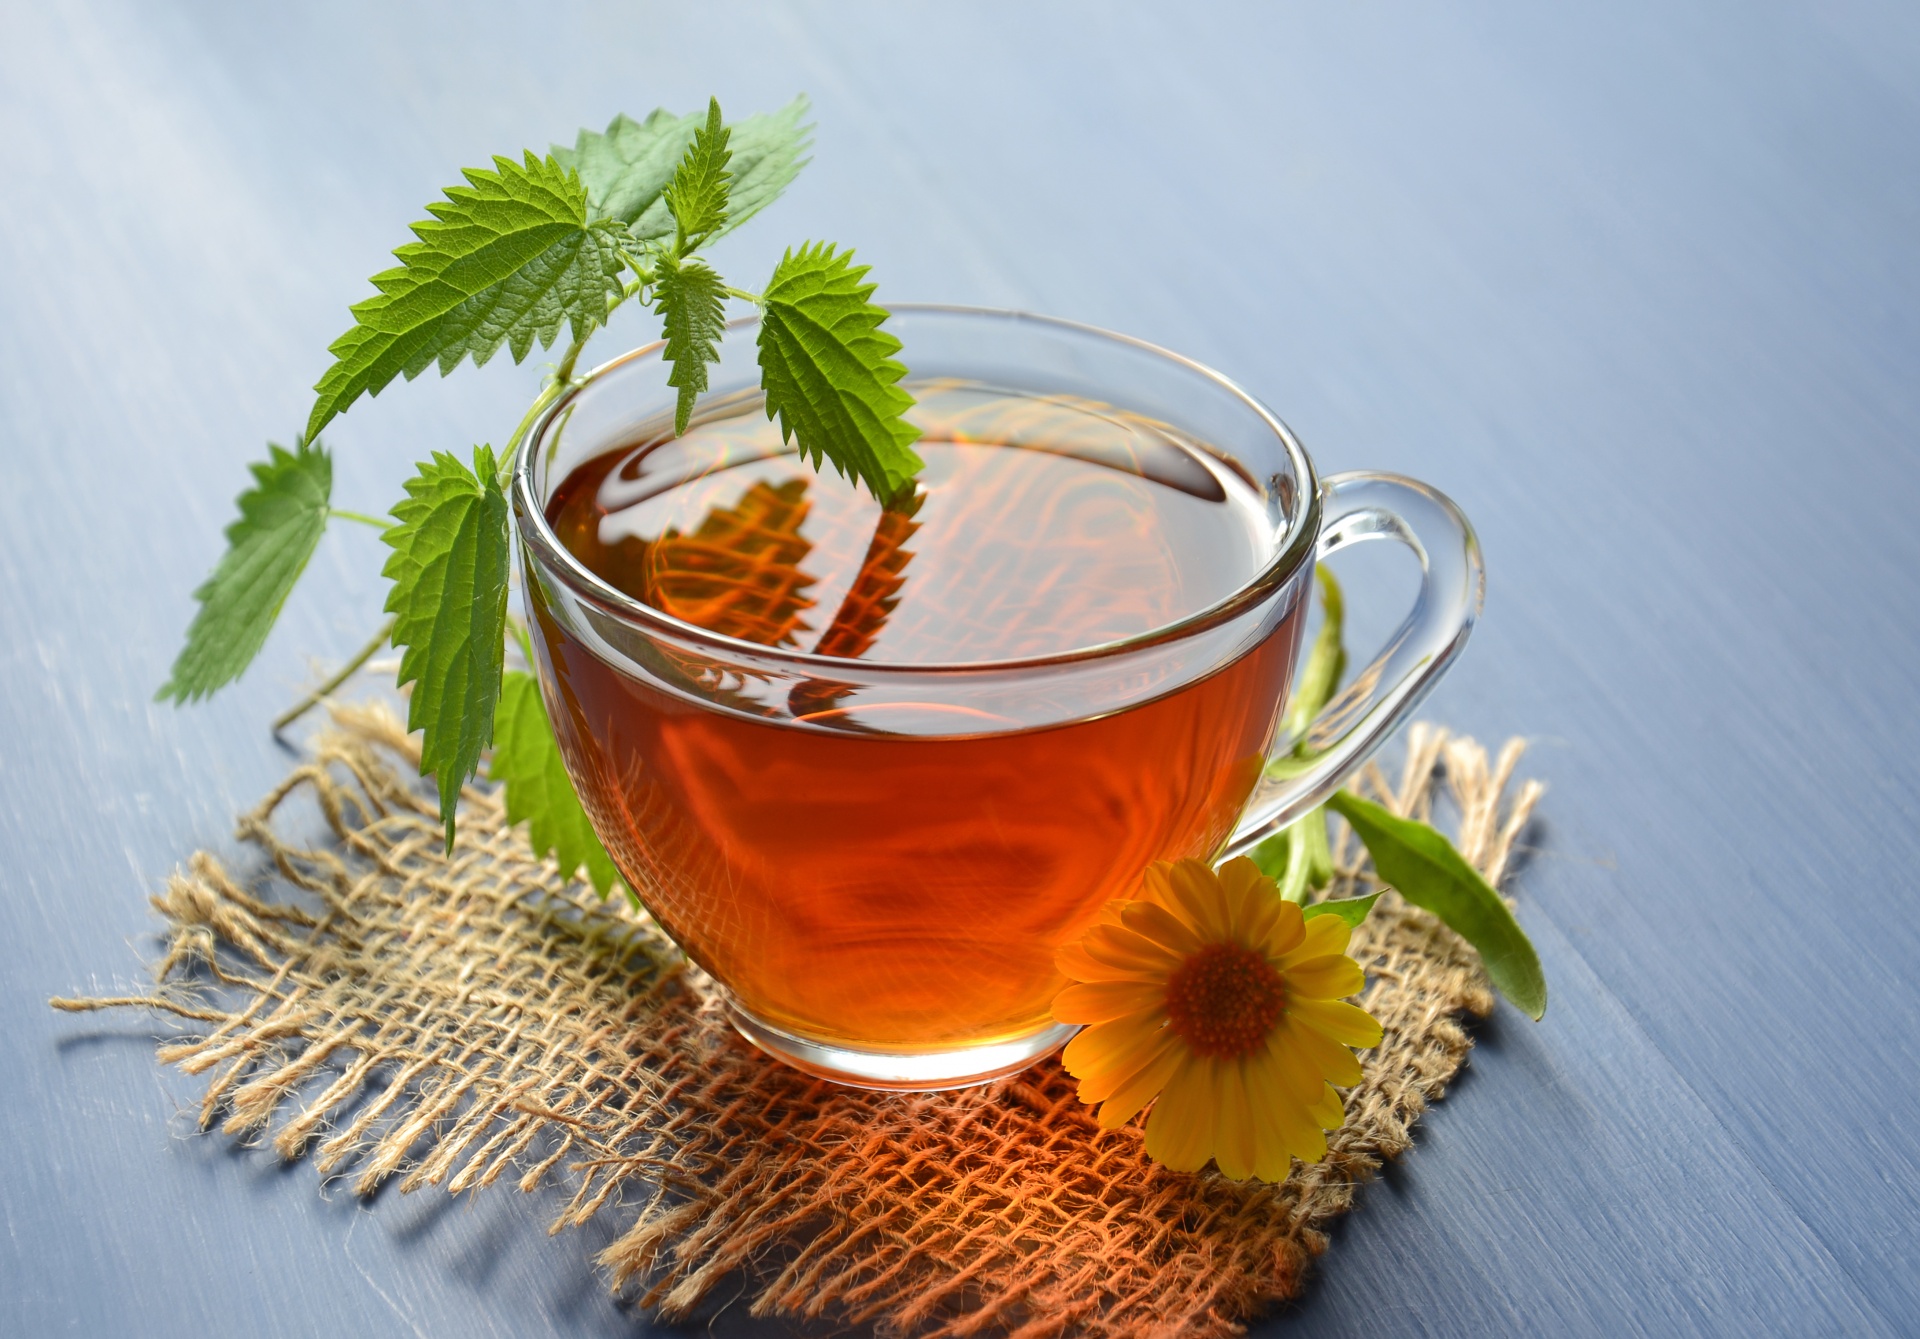 Fogyni szeretnél? Íme 5 szuperhatékony karcsúsító tea | o2paleofutar.hu